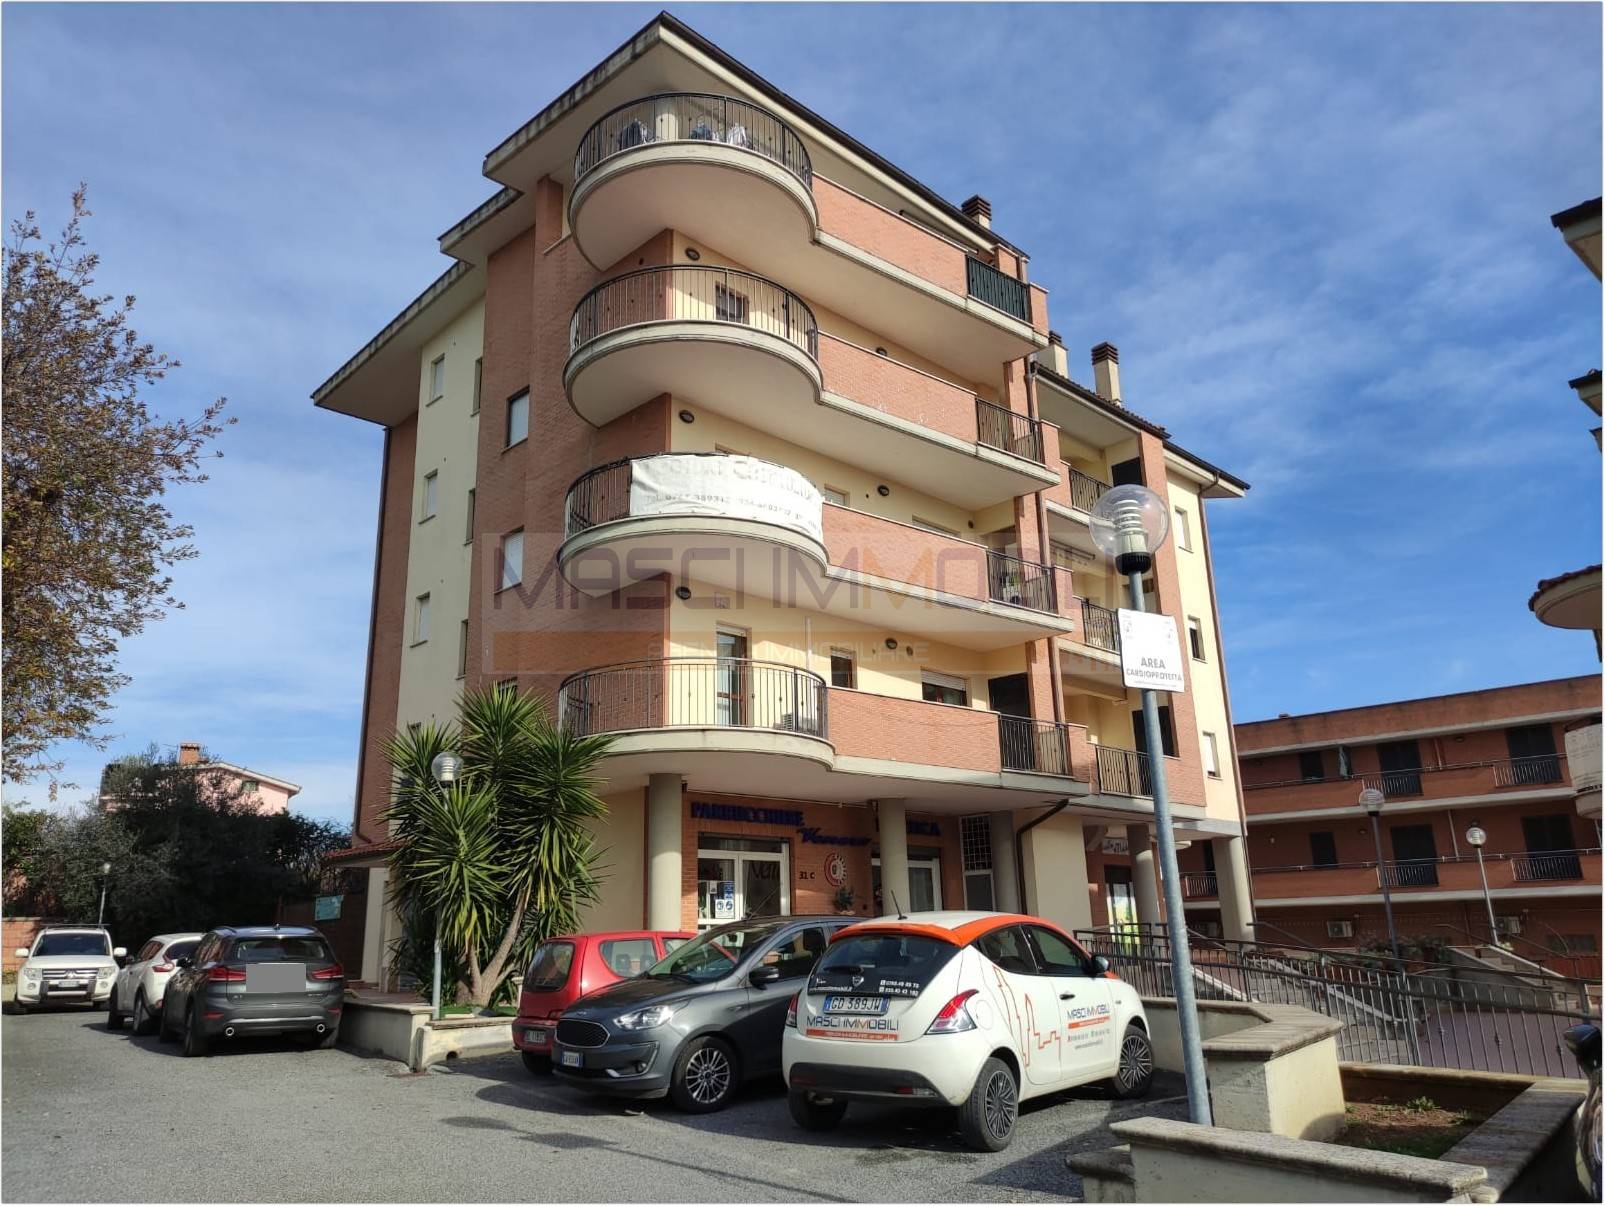 Appartamento in vendita a Fiano Romano, 1 locali, prezzo € 60.000 | PortaleAgenzieImmobiliari.it